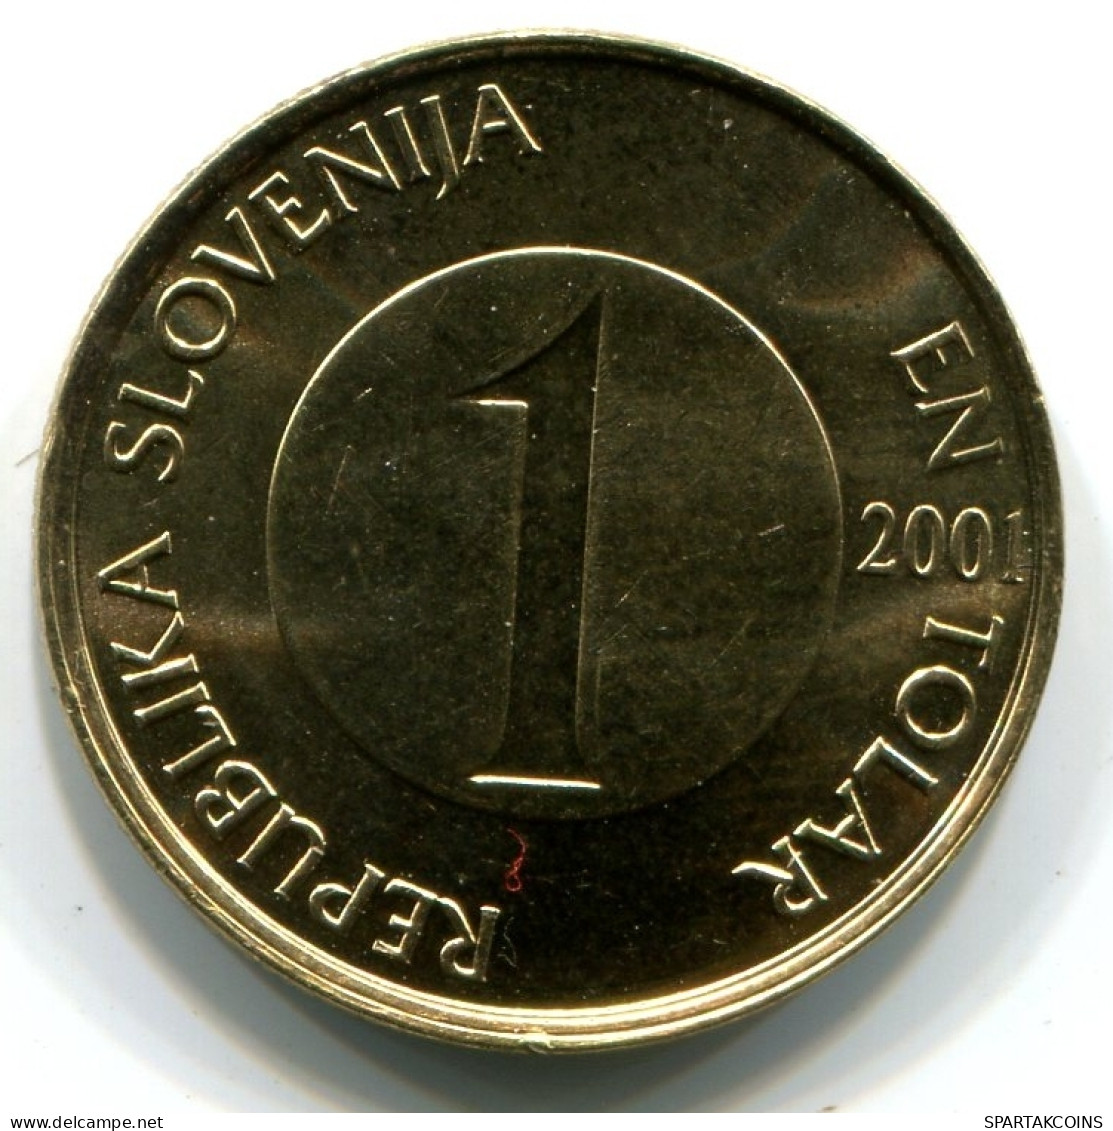 1 TOLAR 2001 SLOVENIA UNC Fish Coin #W11370.U - Eslovenia